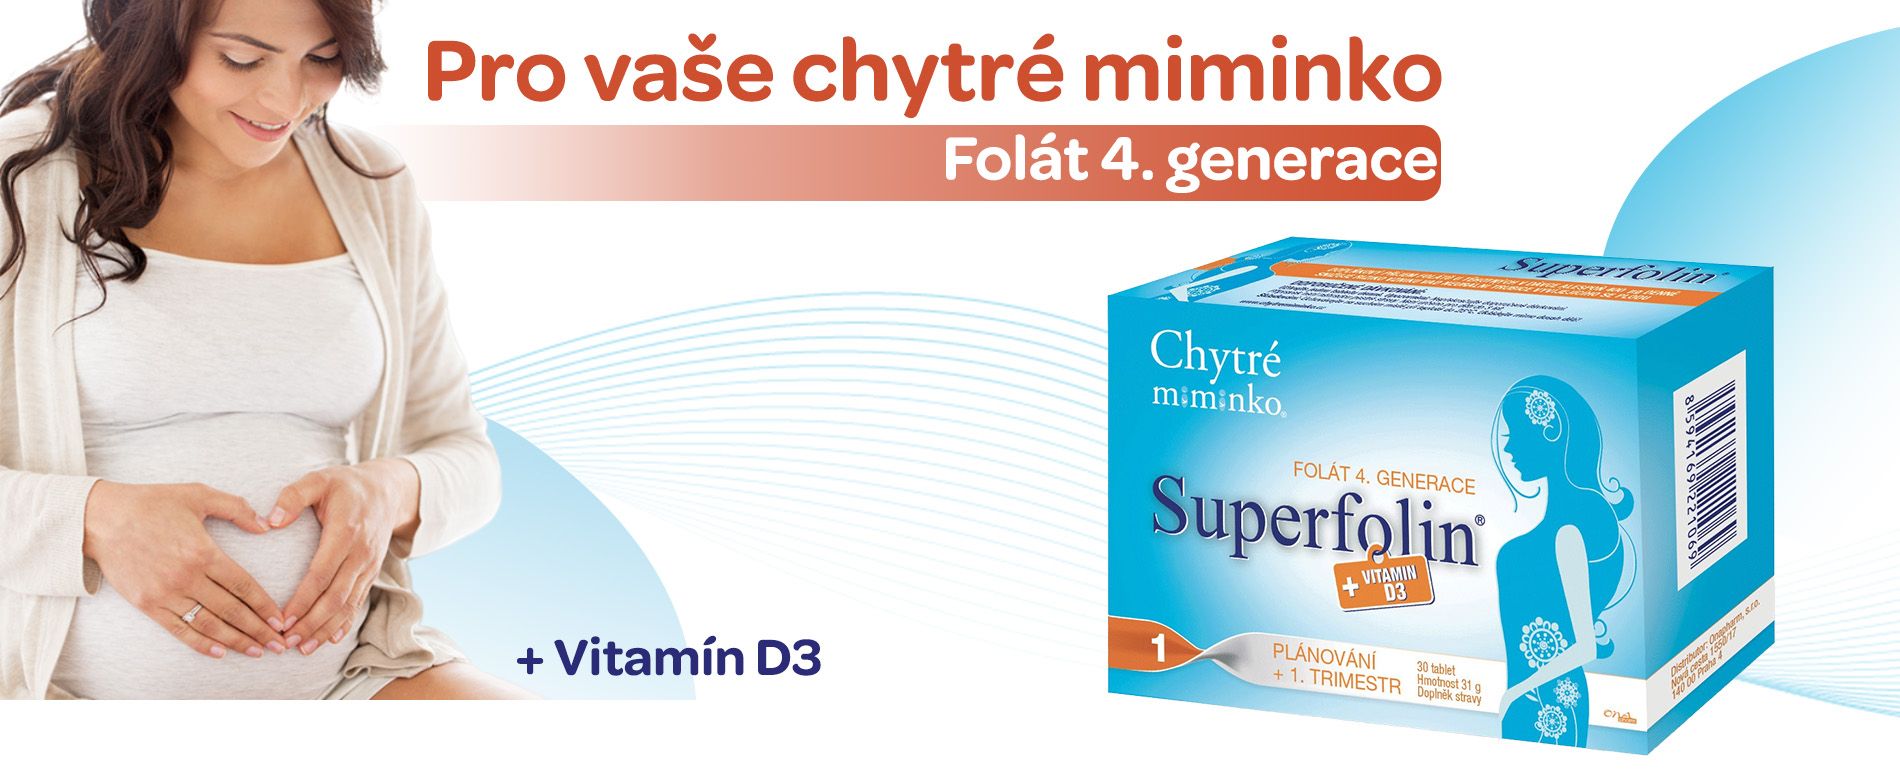 Chytré miminko, Superfolin, Folát 4 generace, vitamín D3, pro těhotné a kéjící, kyselina listová